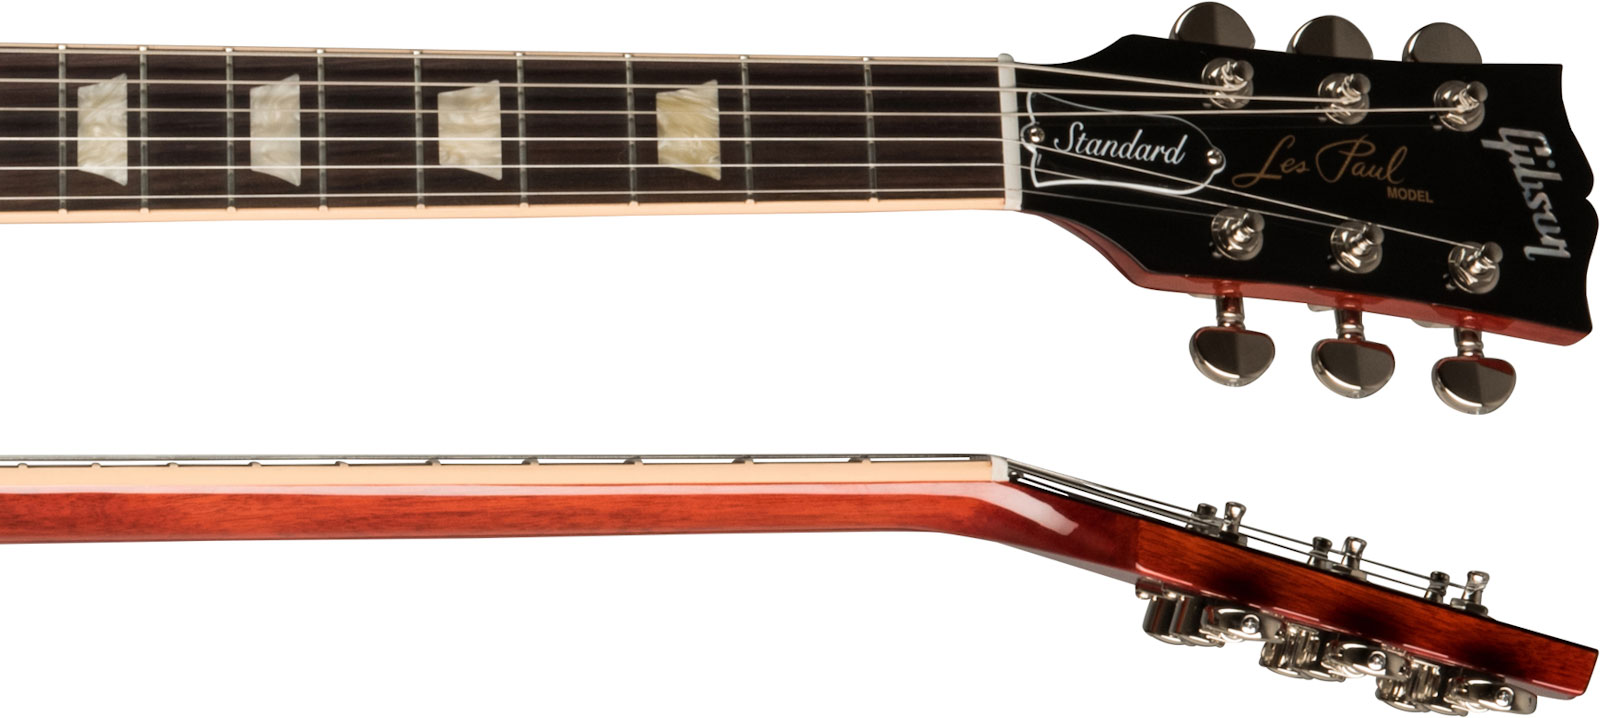 Gibson Les Paul Standard 60s Original 2h Ht Rw - Unburst - Guitarra eléctrica de corte único. - Variation 3